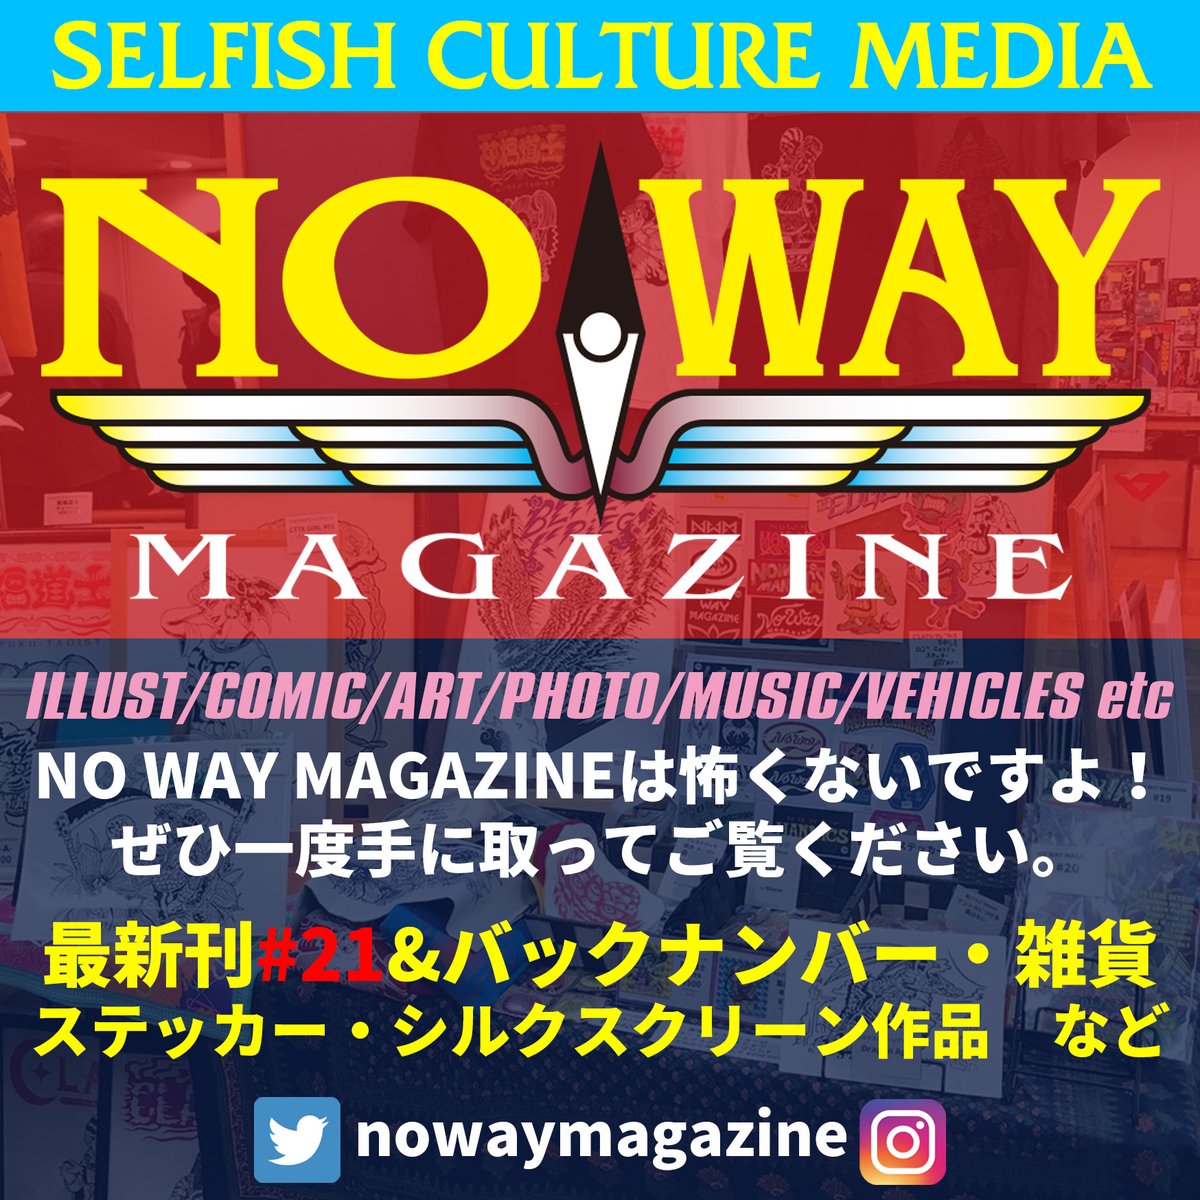 nowaymagazine tweet picture